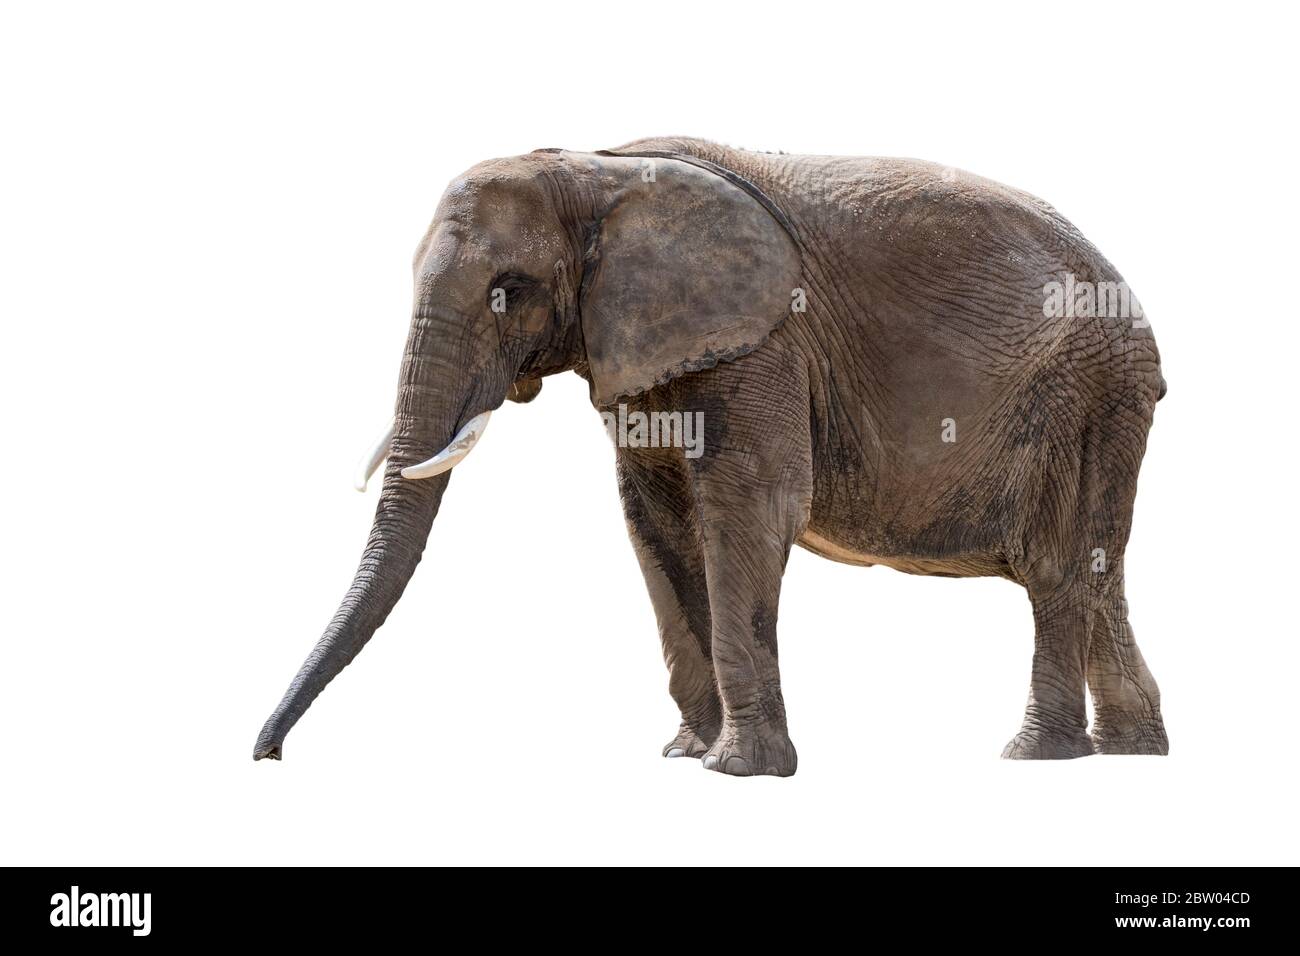 African bush elephant / African savanna elephant (Loxodonta africana) against white background Stock Photo